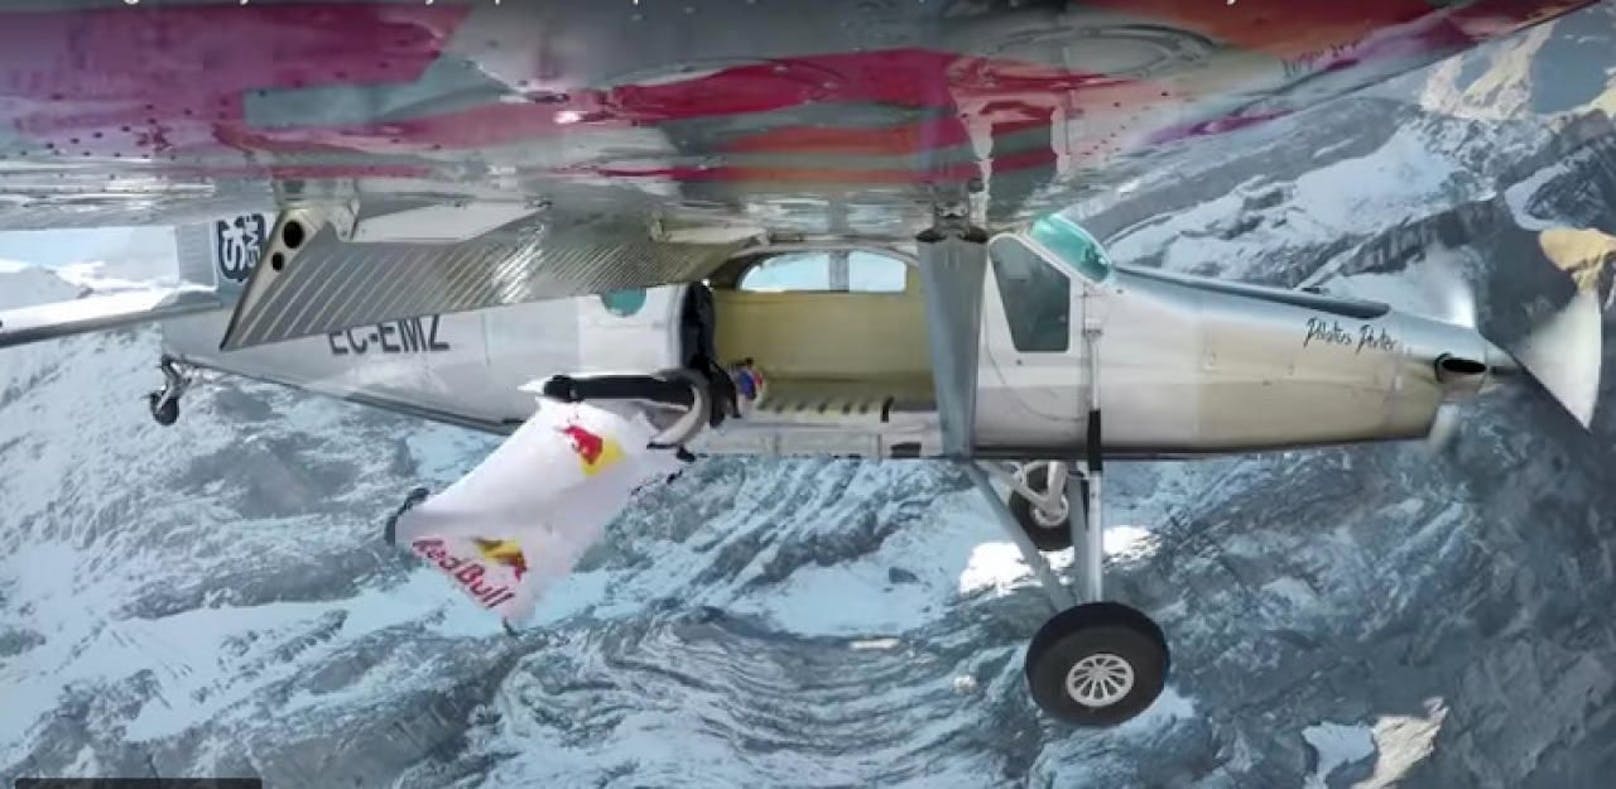 Basejumper springen von einem Berg in ein Flugzeug